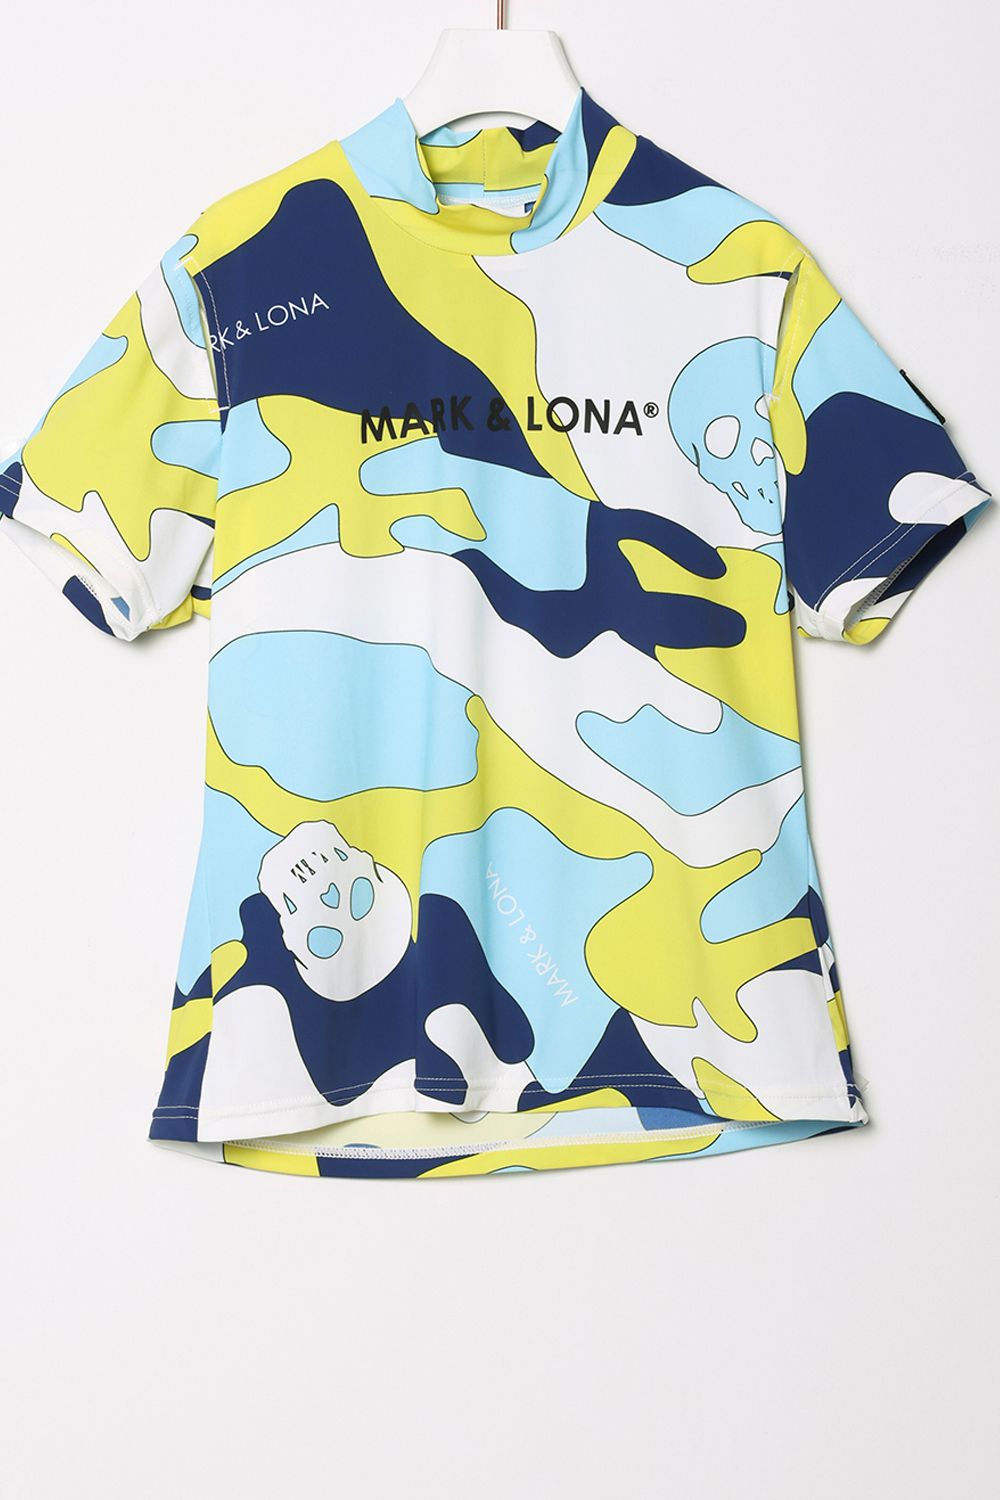 MARK&LONA モックネック カモフラブルー - Tシャツ/カットソー(半袖/袖